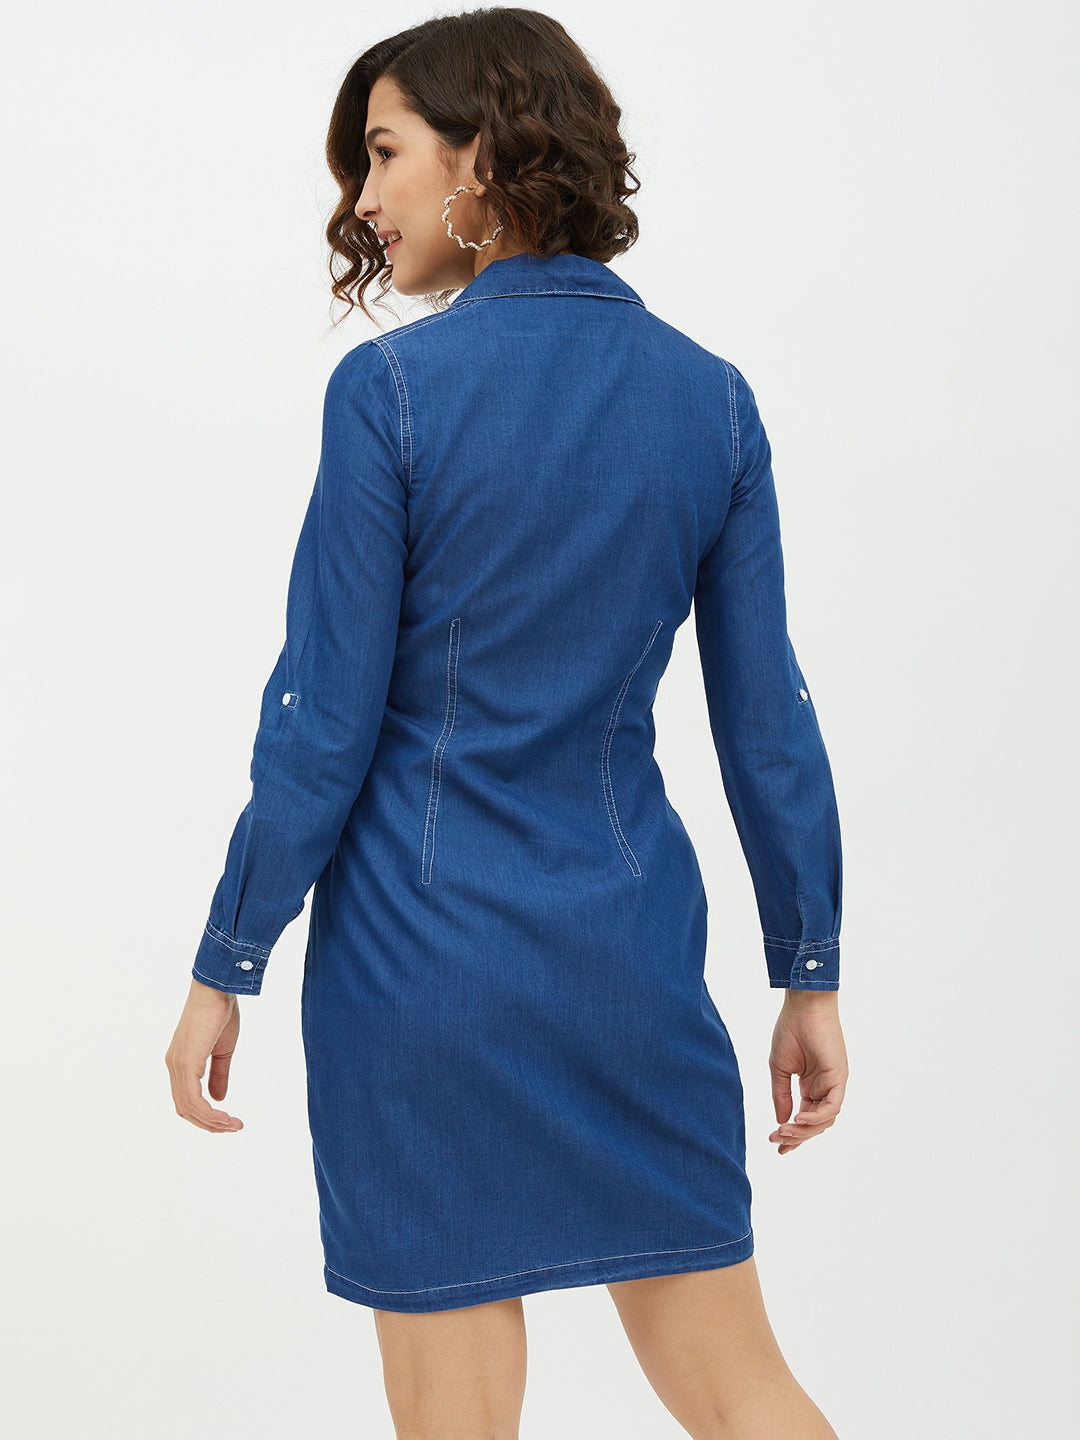 Blue-Denim-Lapel-Collar-Shirt-Dress